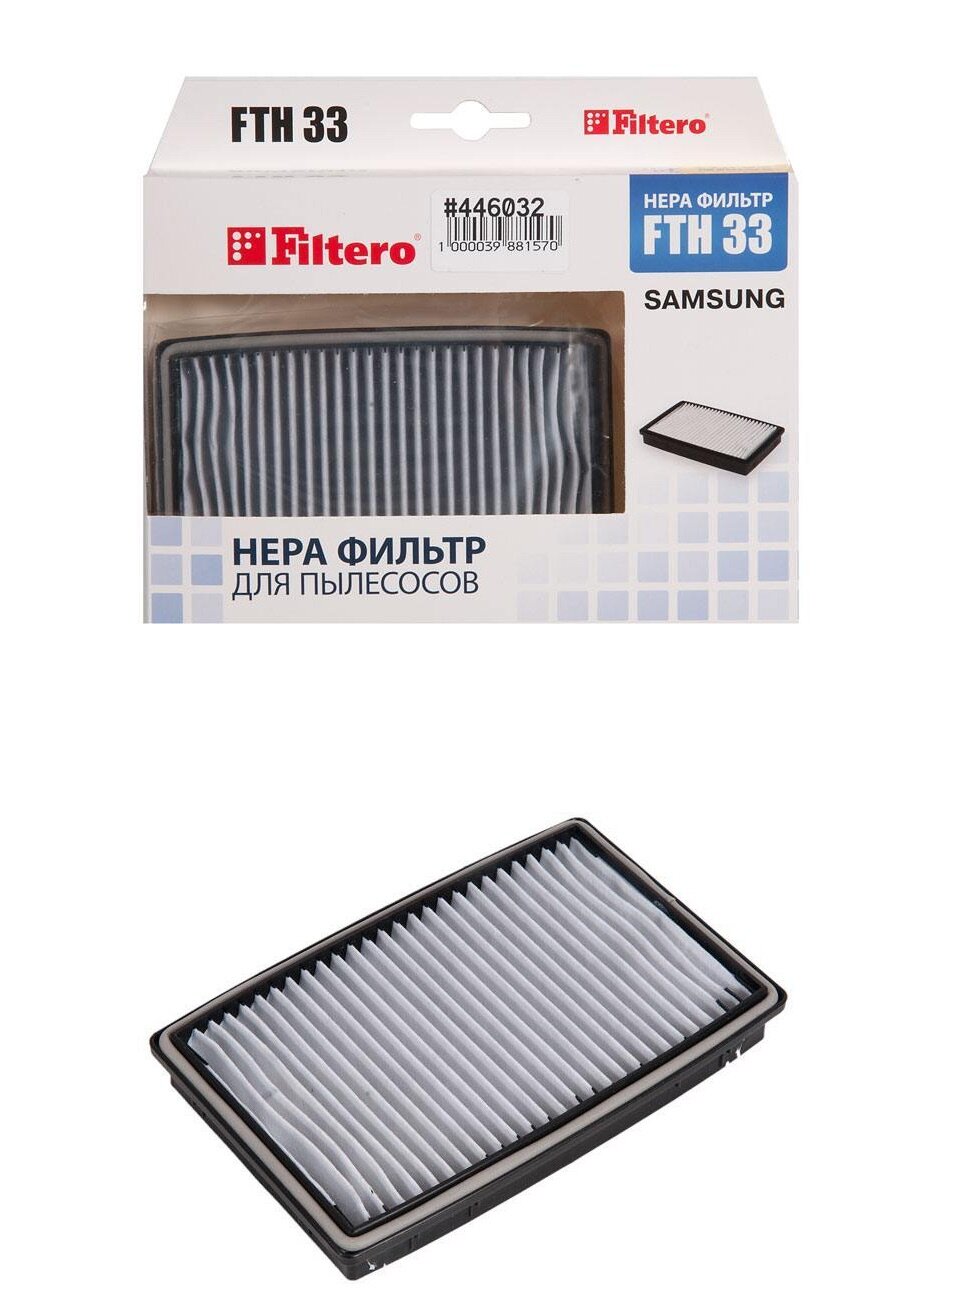 Filter / Фильтр для пылесосов Samsung, Filtero FTH 33 SAM, HEPA